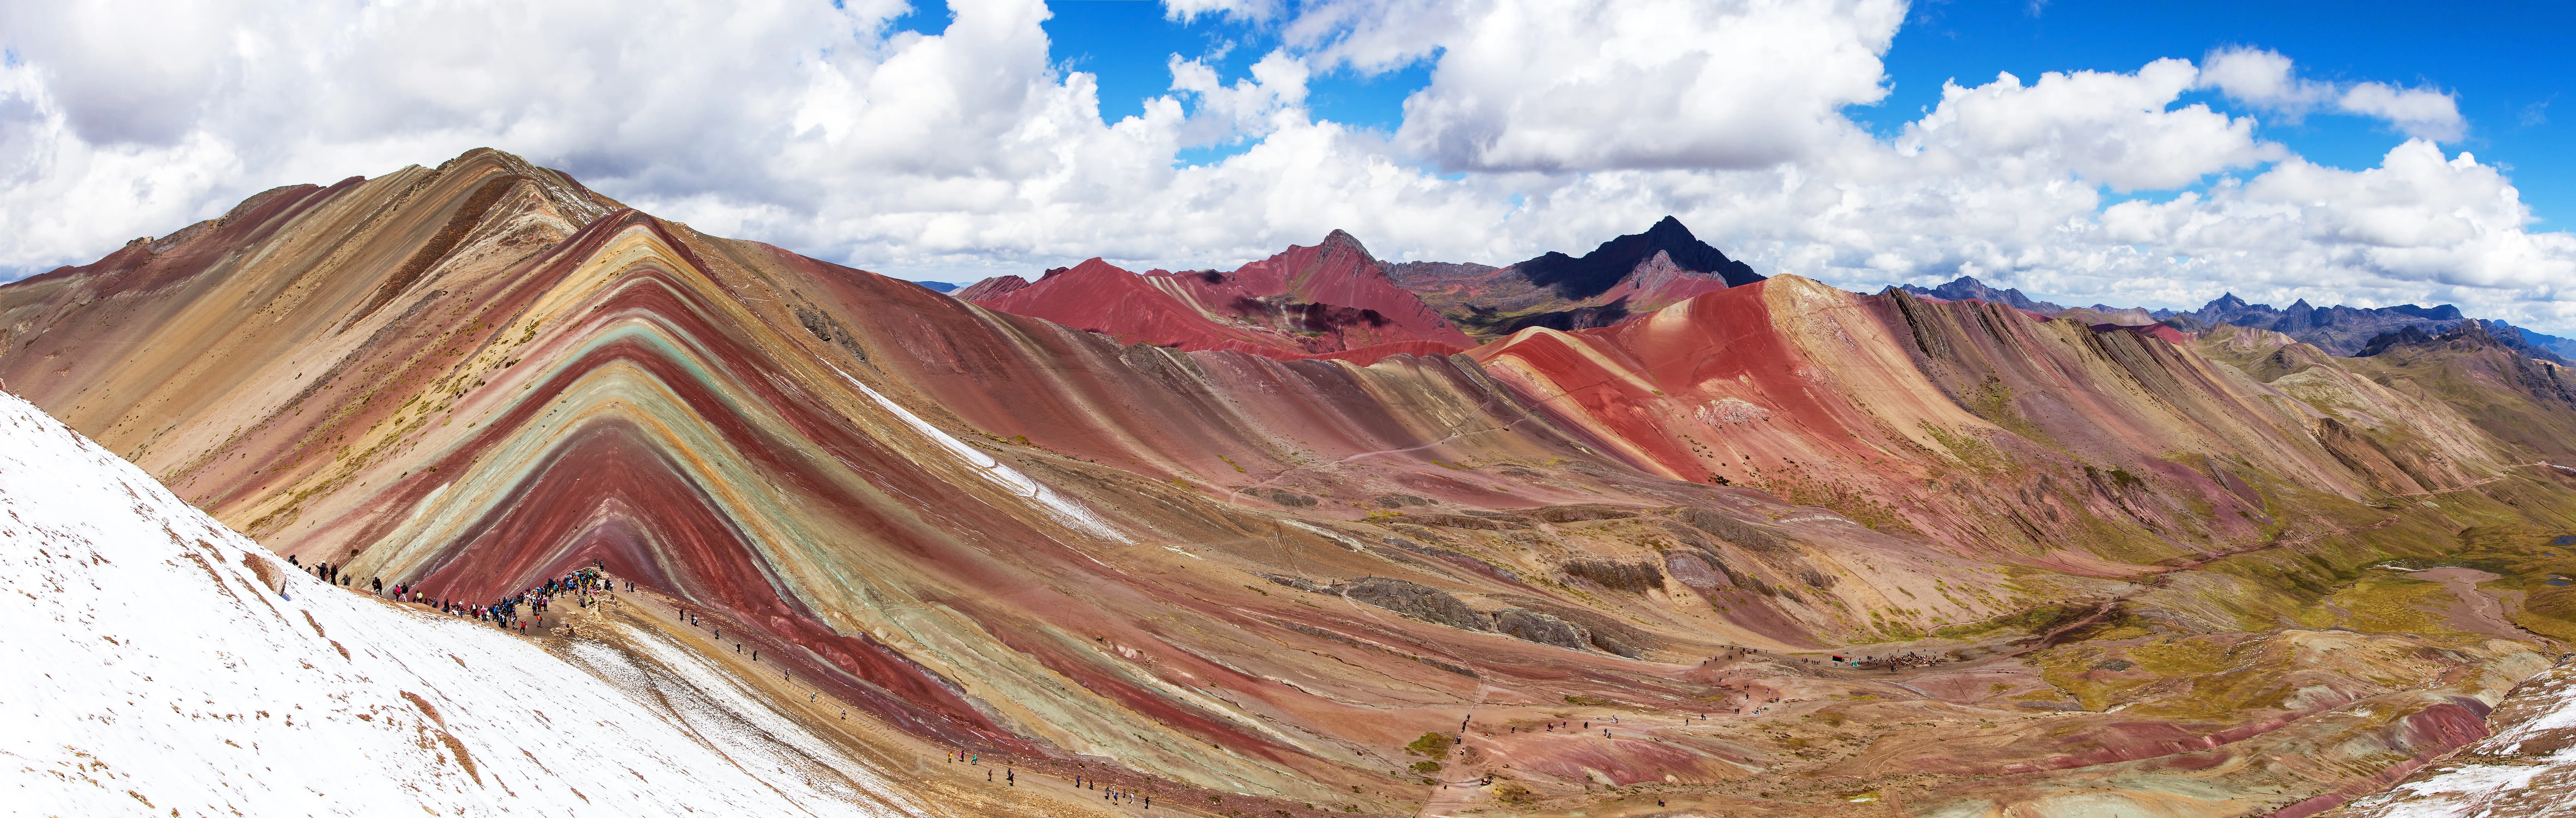 Montaña de Siete Colores y Valle Rojo 3